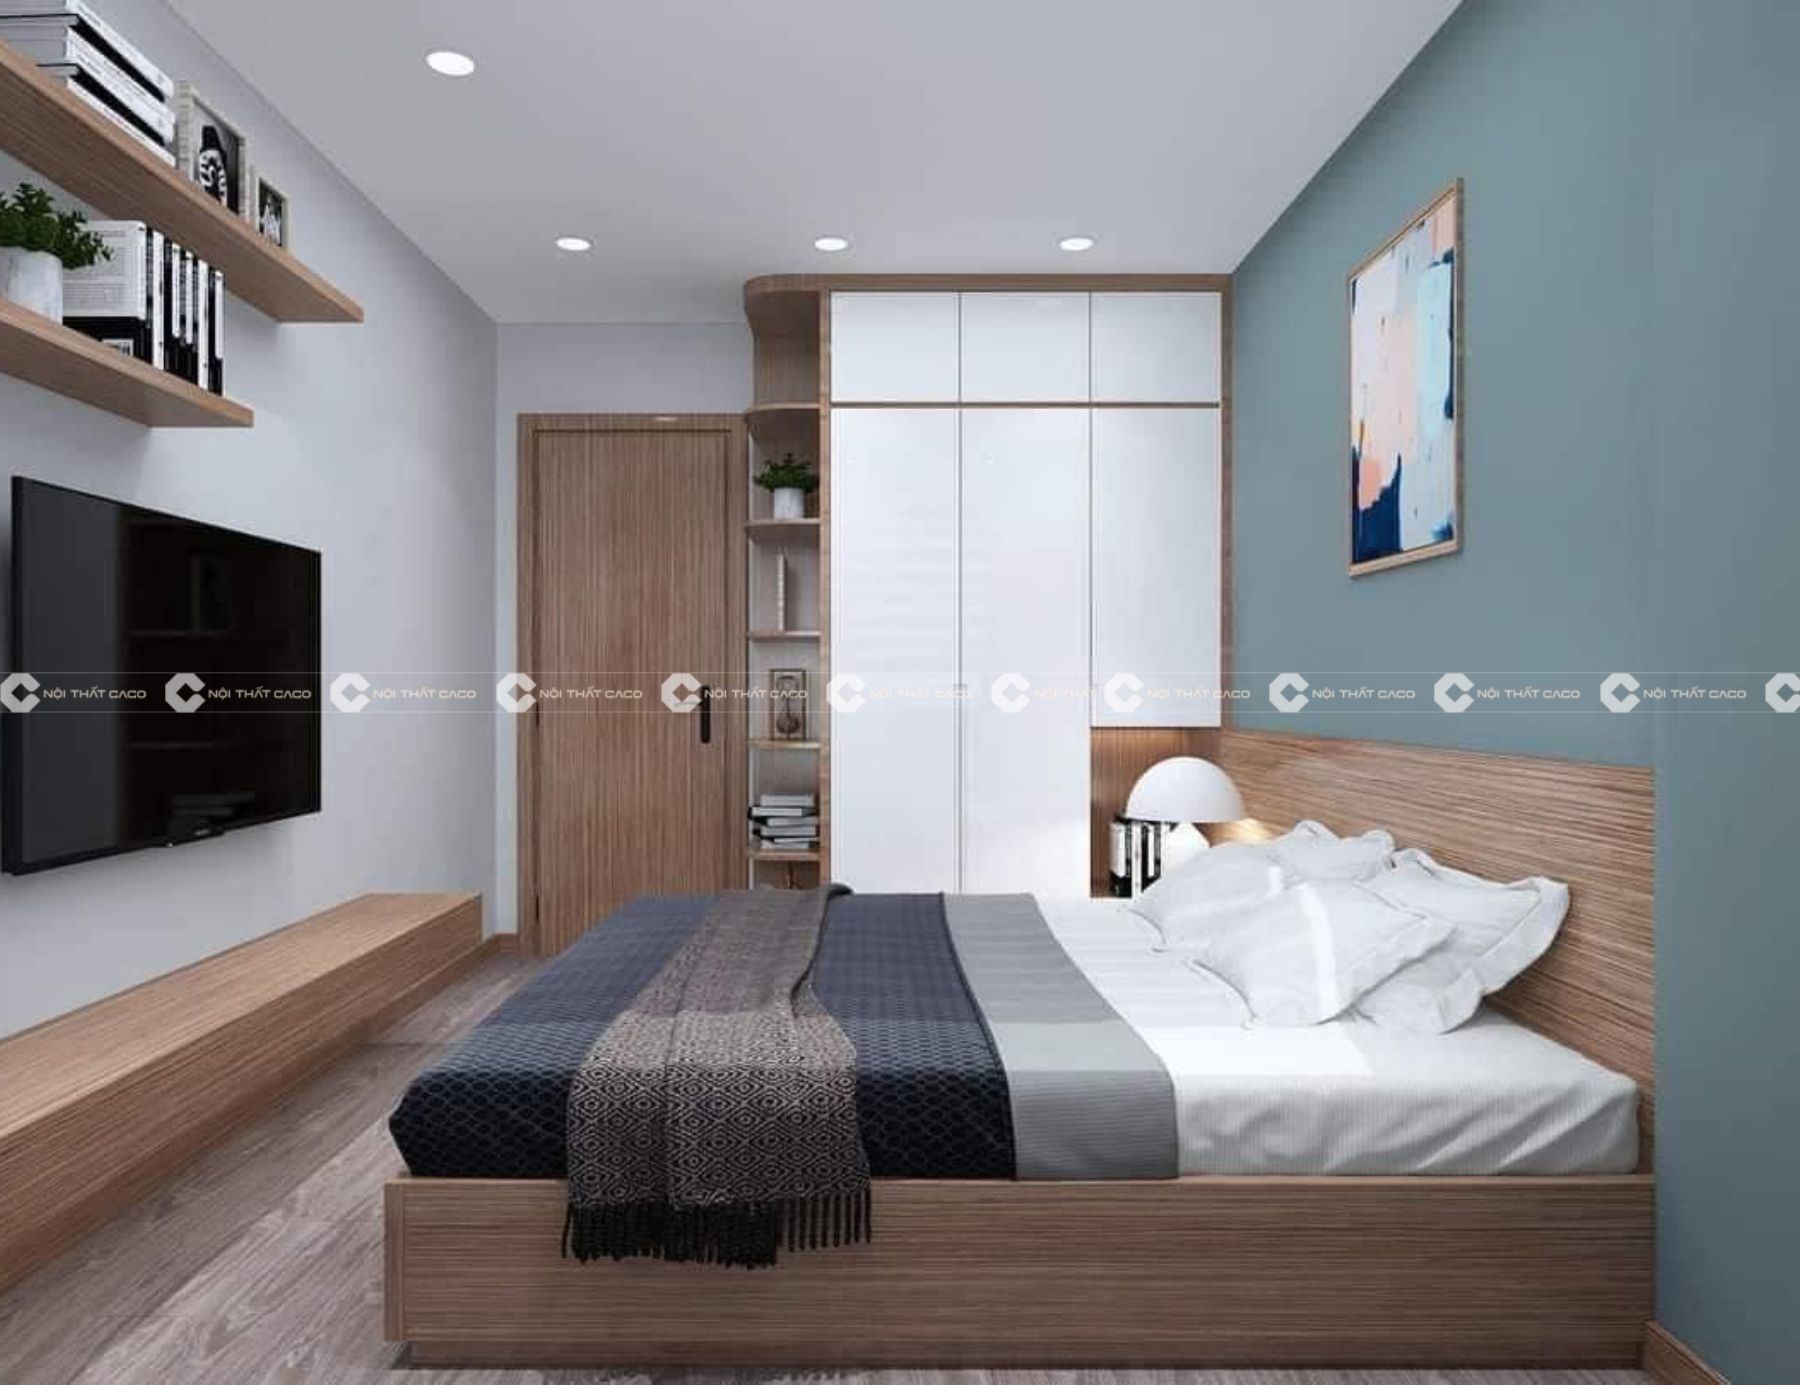 Thiết kế thi công nội thất phòng ngủ đẹp theo phong cách hiện đại tại Quận 7 6